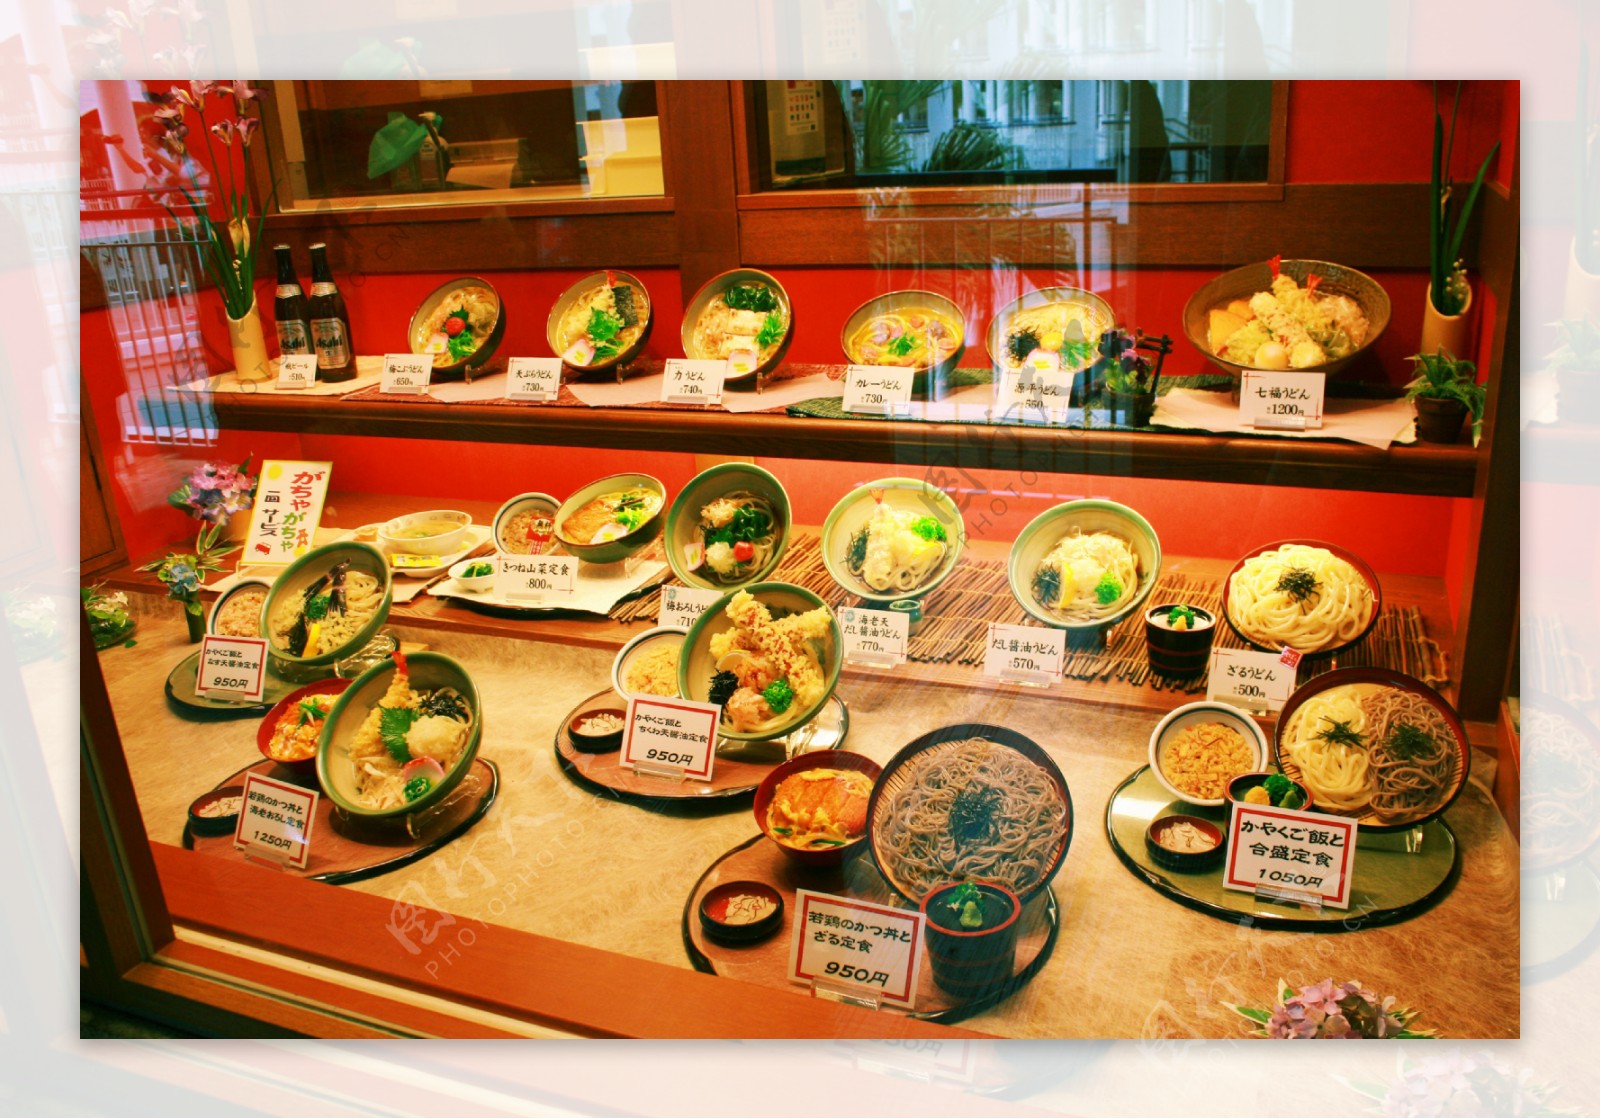 日本橱窗的仿真套餐图片